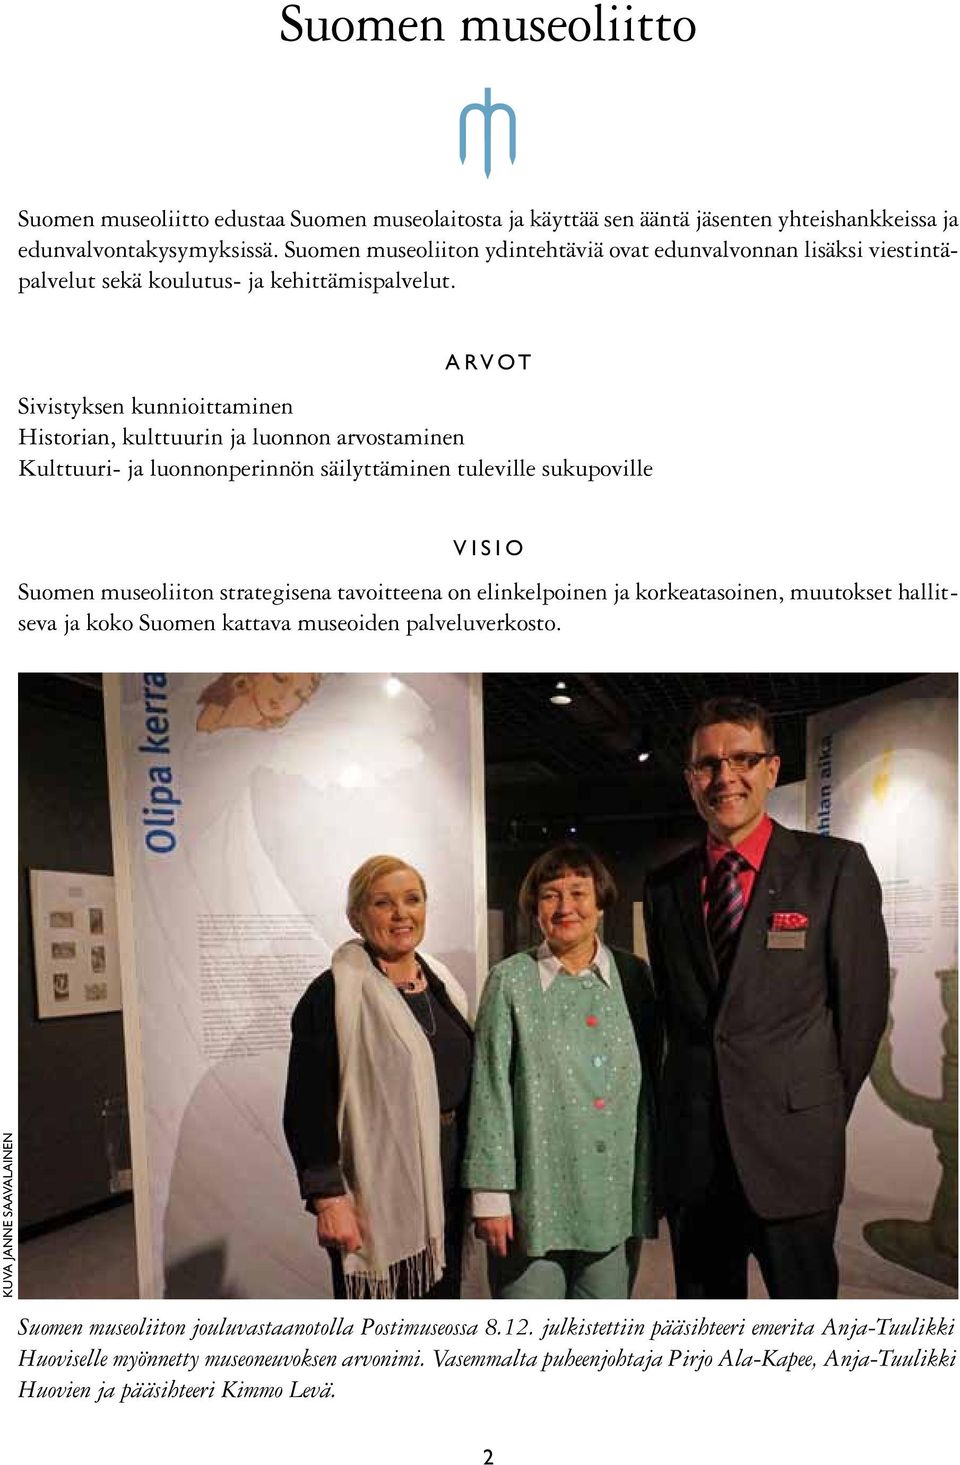 Arvot Sivistyksen kunnioittaminen Historian, kulttuurin ja luonnon arvostaminen Kulttuuri- ja luonnonperinnön säilyttäminen tuleville sukupoville Visio Suomen museoliiton strategisena tavoitteena on